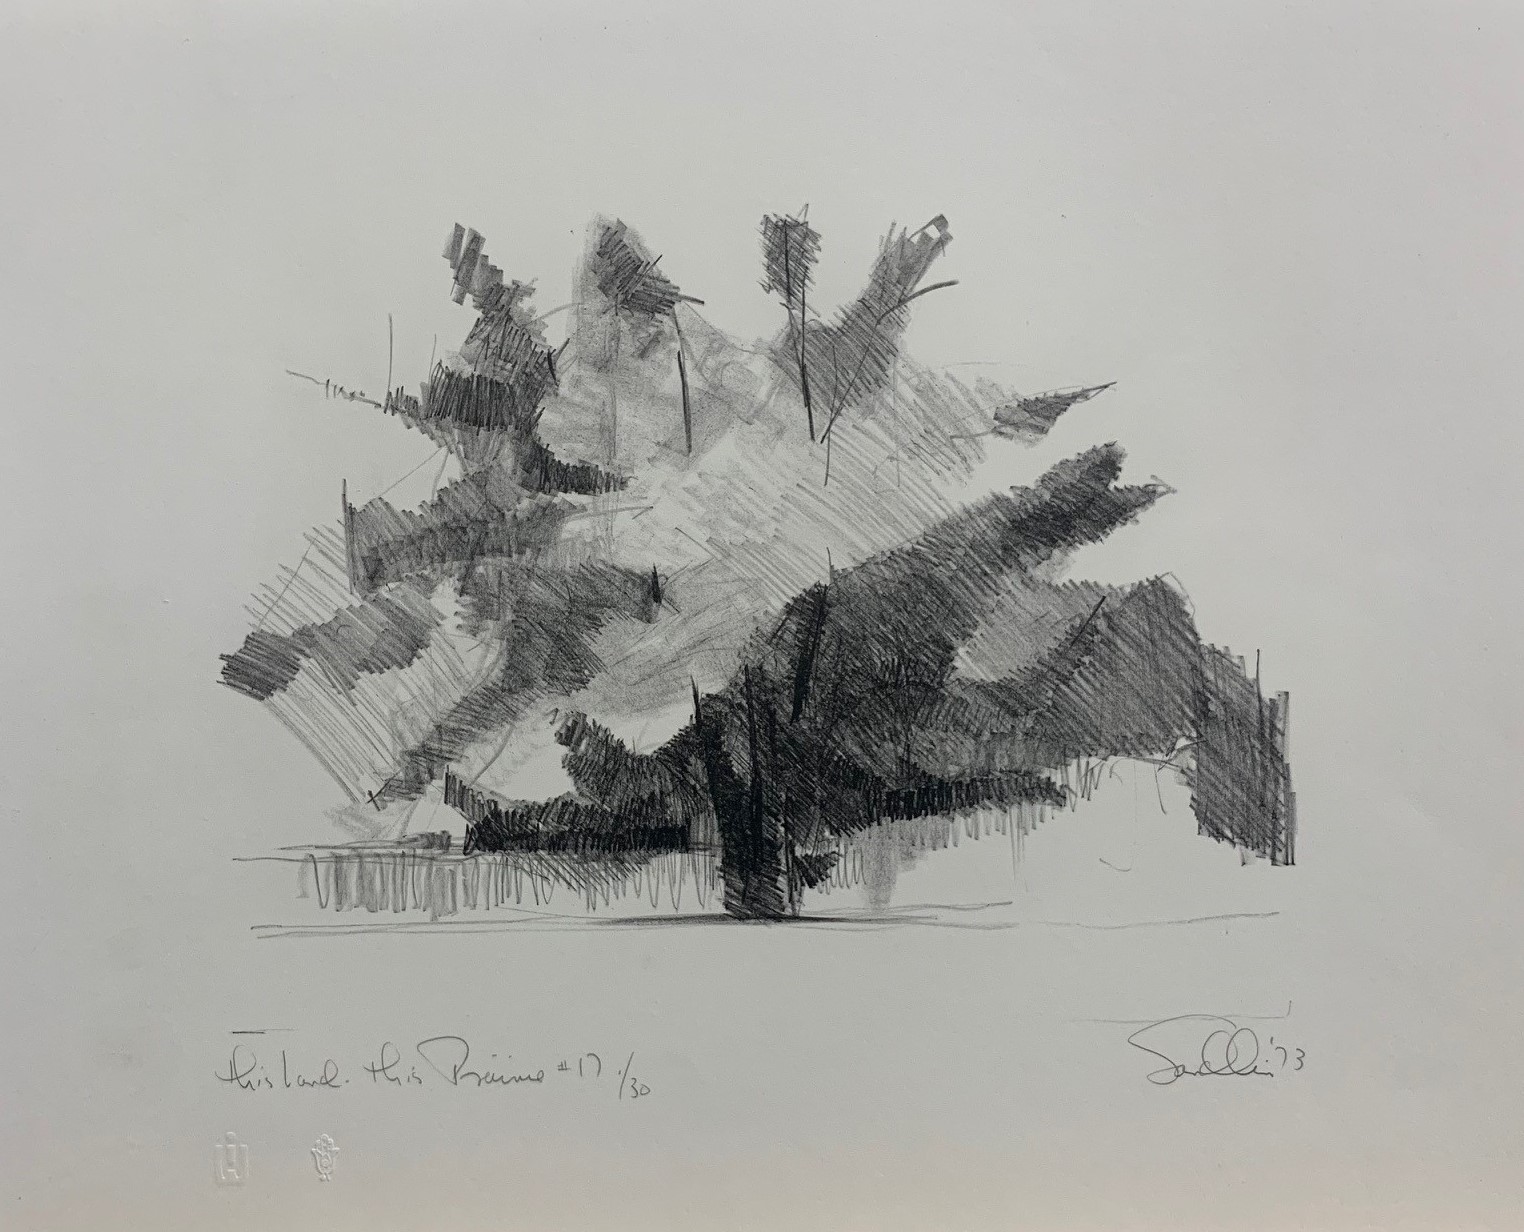 John Sandlin, “This Land, This Prairie ed. 17/30”, lithograph